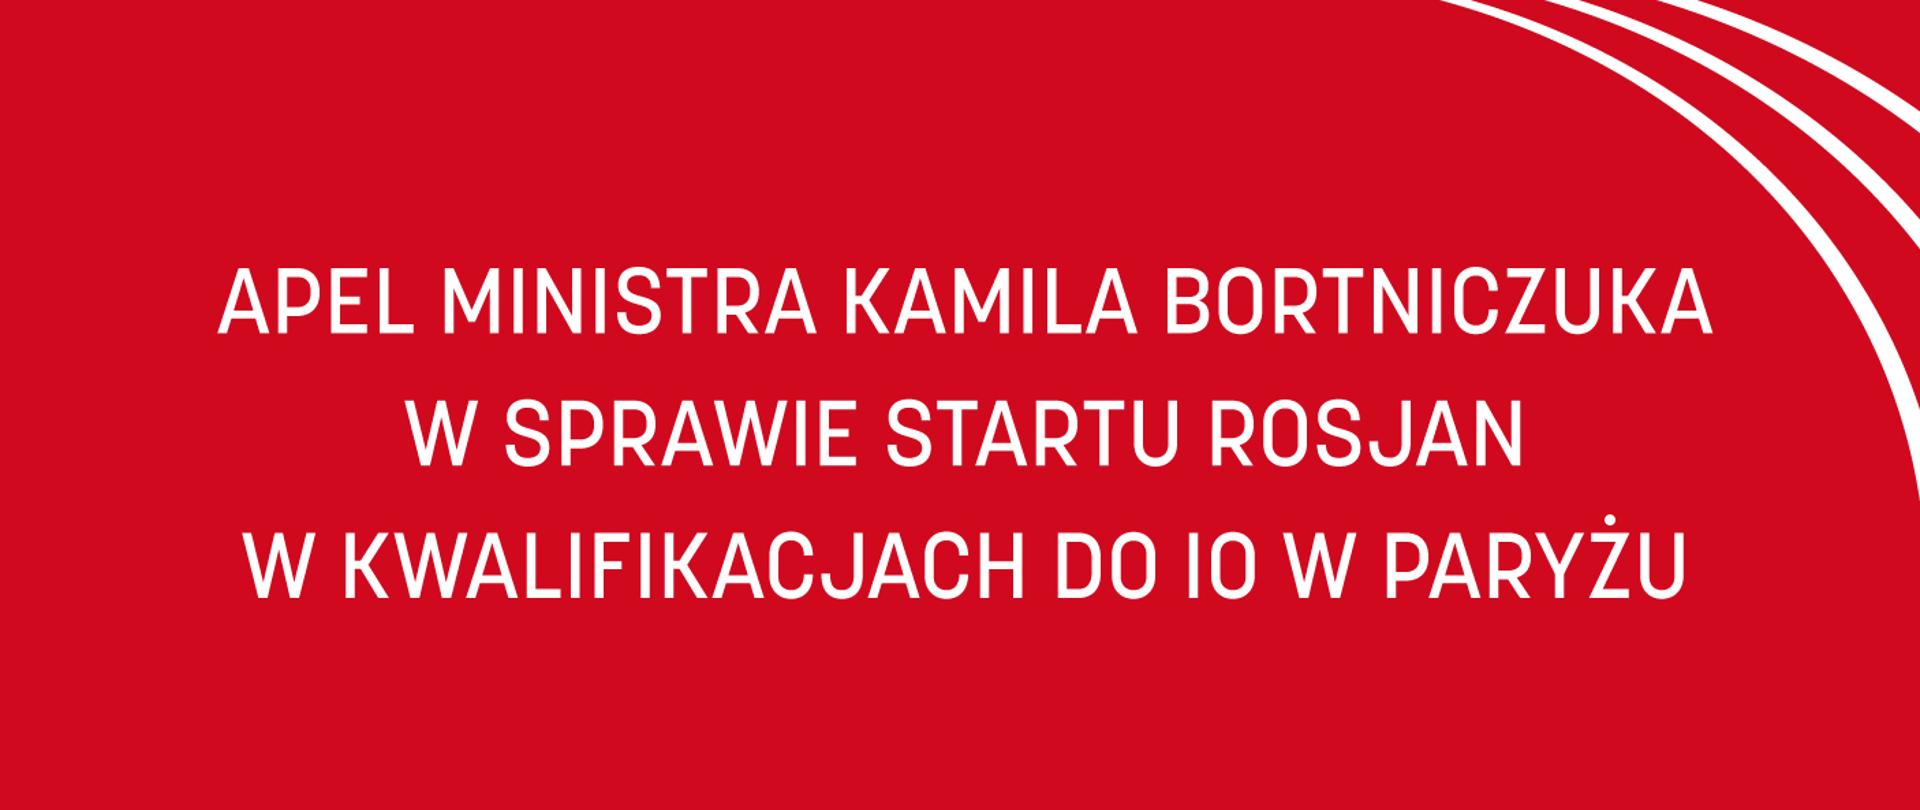 Czerwona grafika z napisem: Apel ministra Kamila Bortniczuka w sprawie startu Rosjan w kwalifikacjach do IO w Paryżu